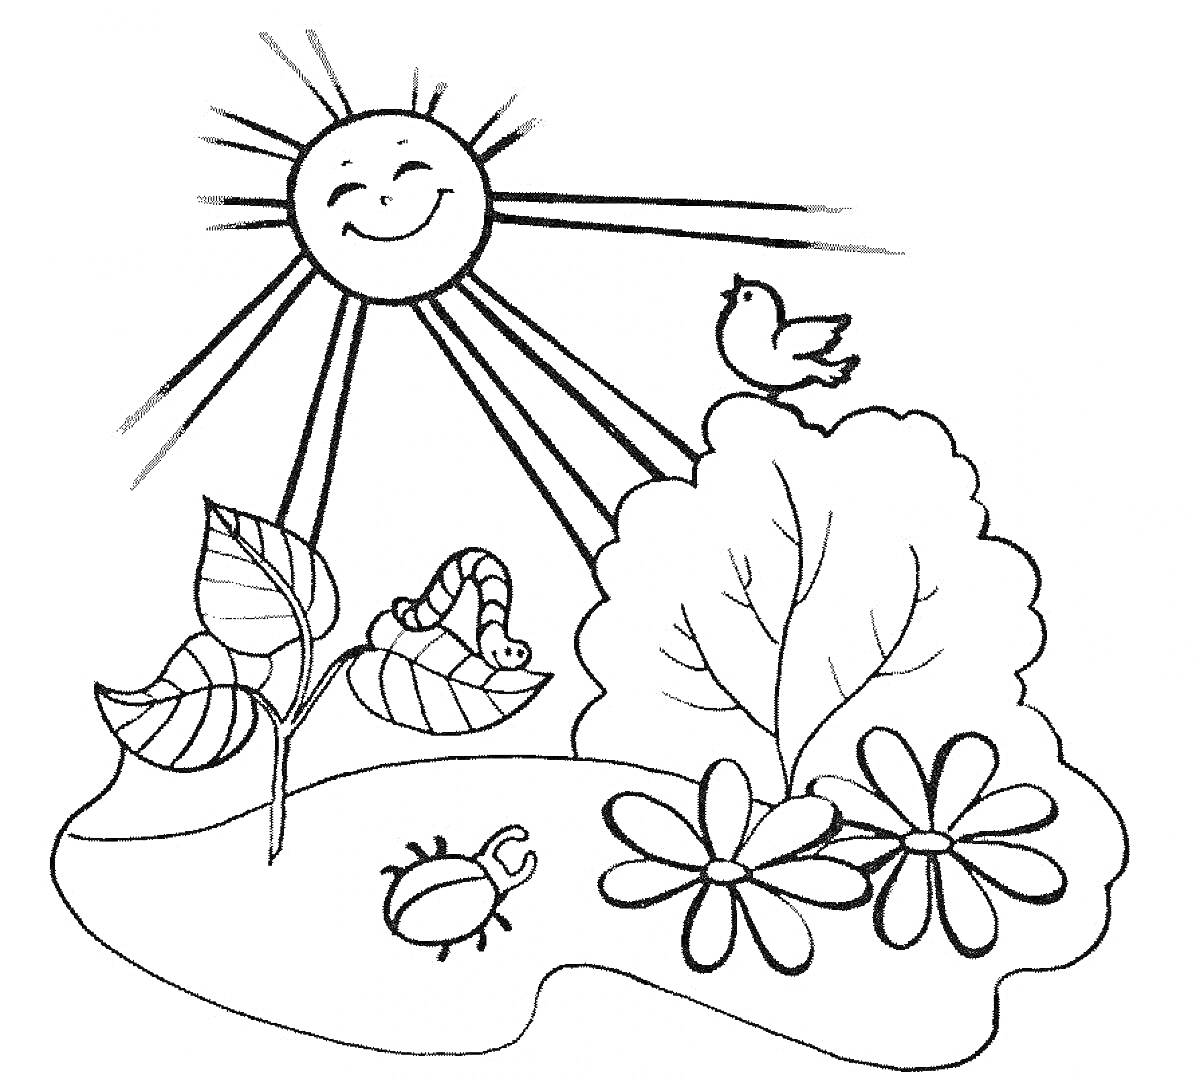 Раскраска Летний день в июне с улыбающимся солнцем, птицей, червяком, кустом, большим листком, цветами и жуком